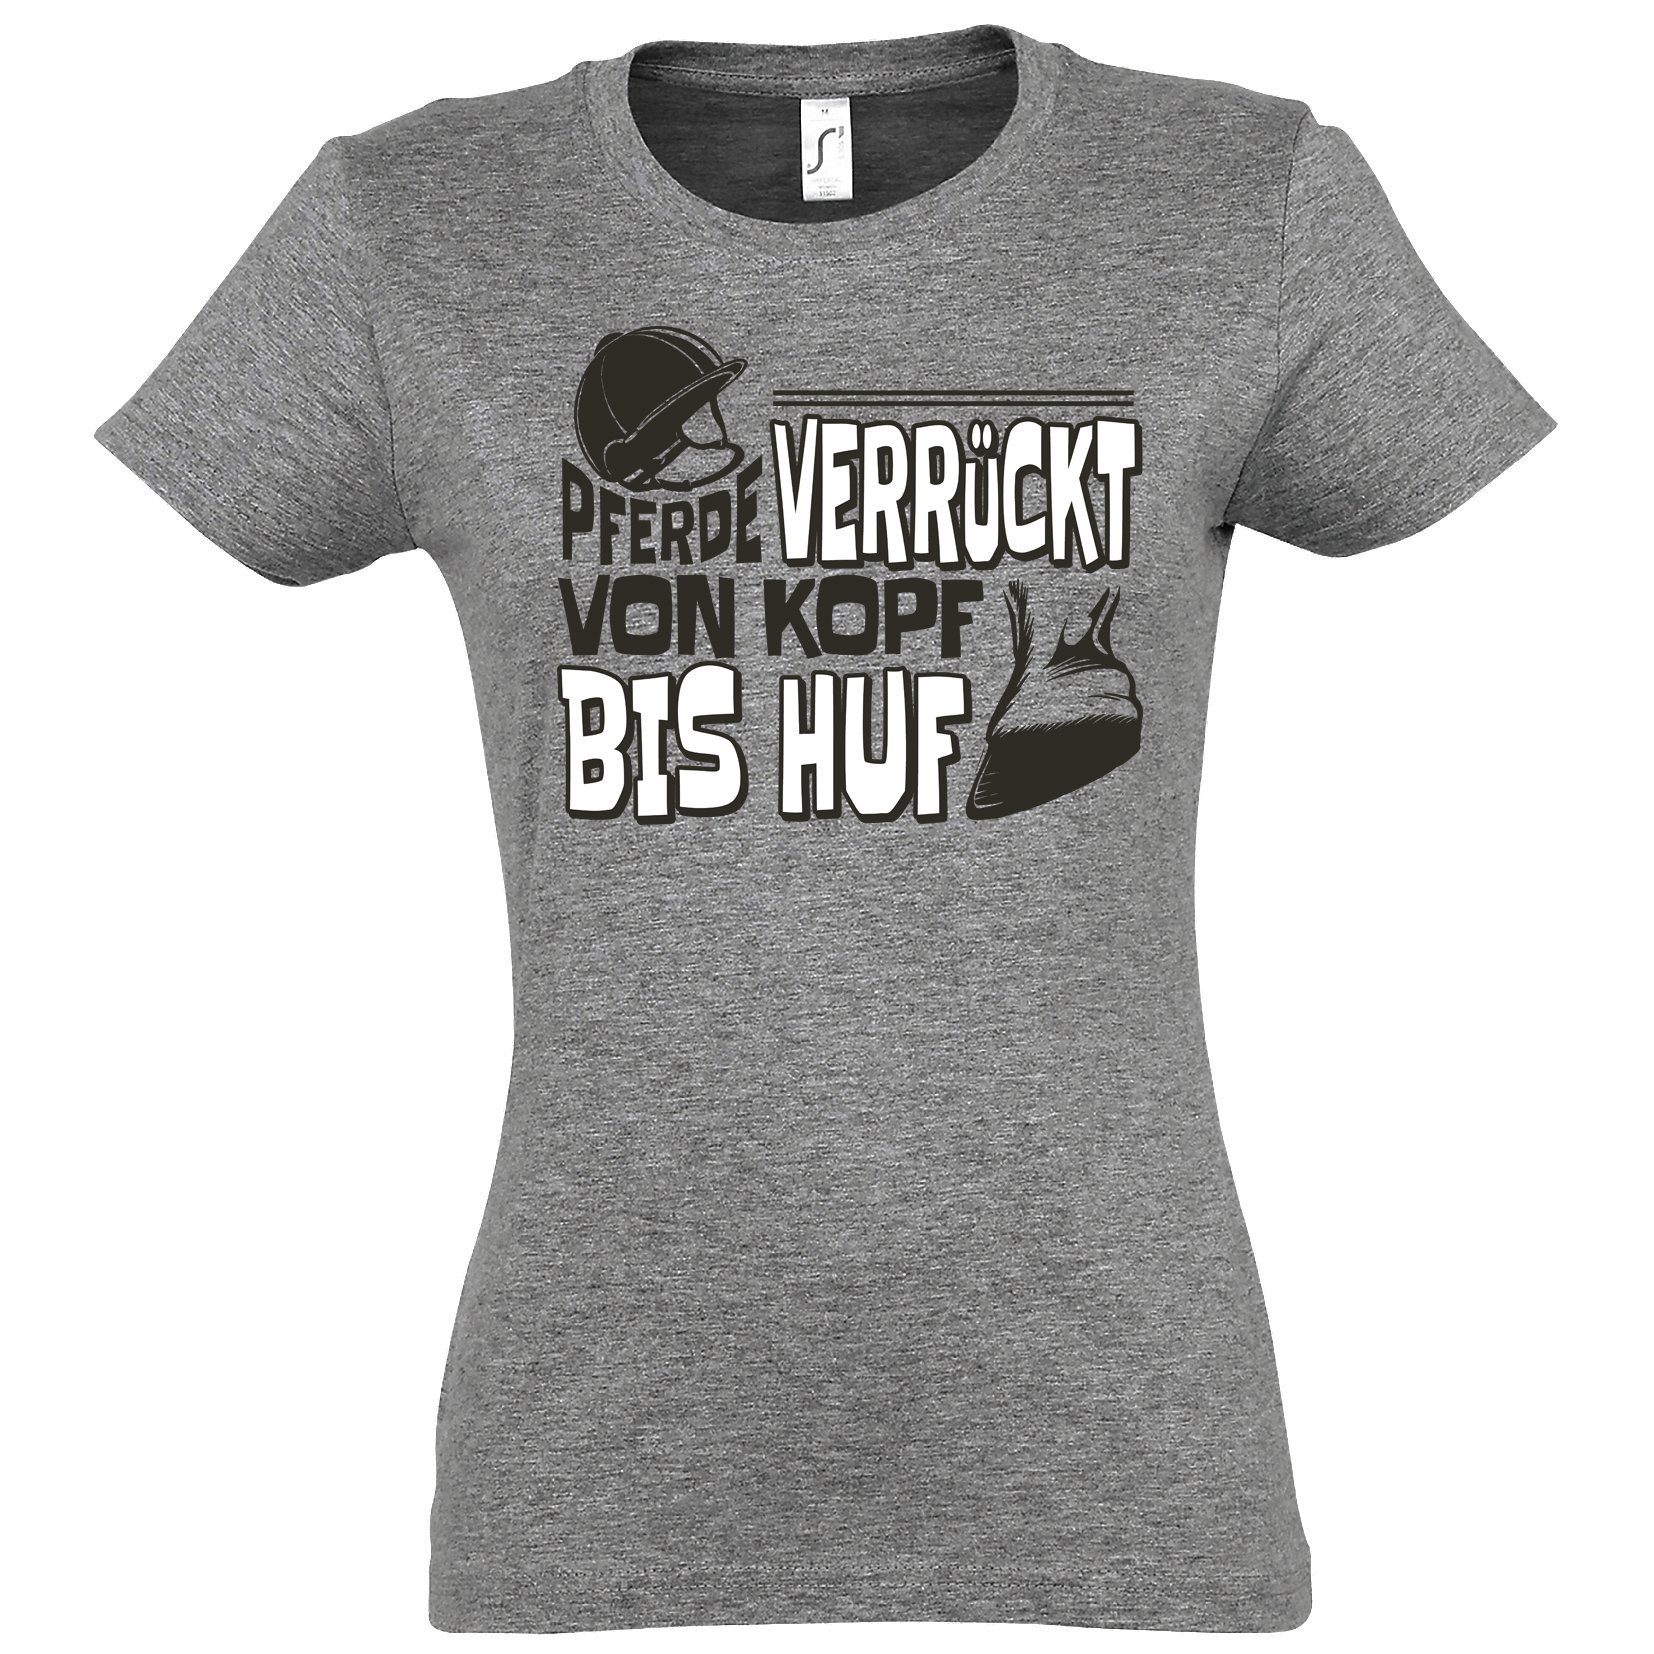 Huf" Kopf Von Youth Verrückt modischem Damen T-Shirt mit Grau "Pferde Frontprint T-Shirt Bis Designz